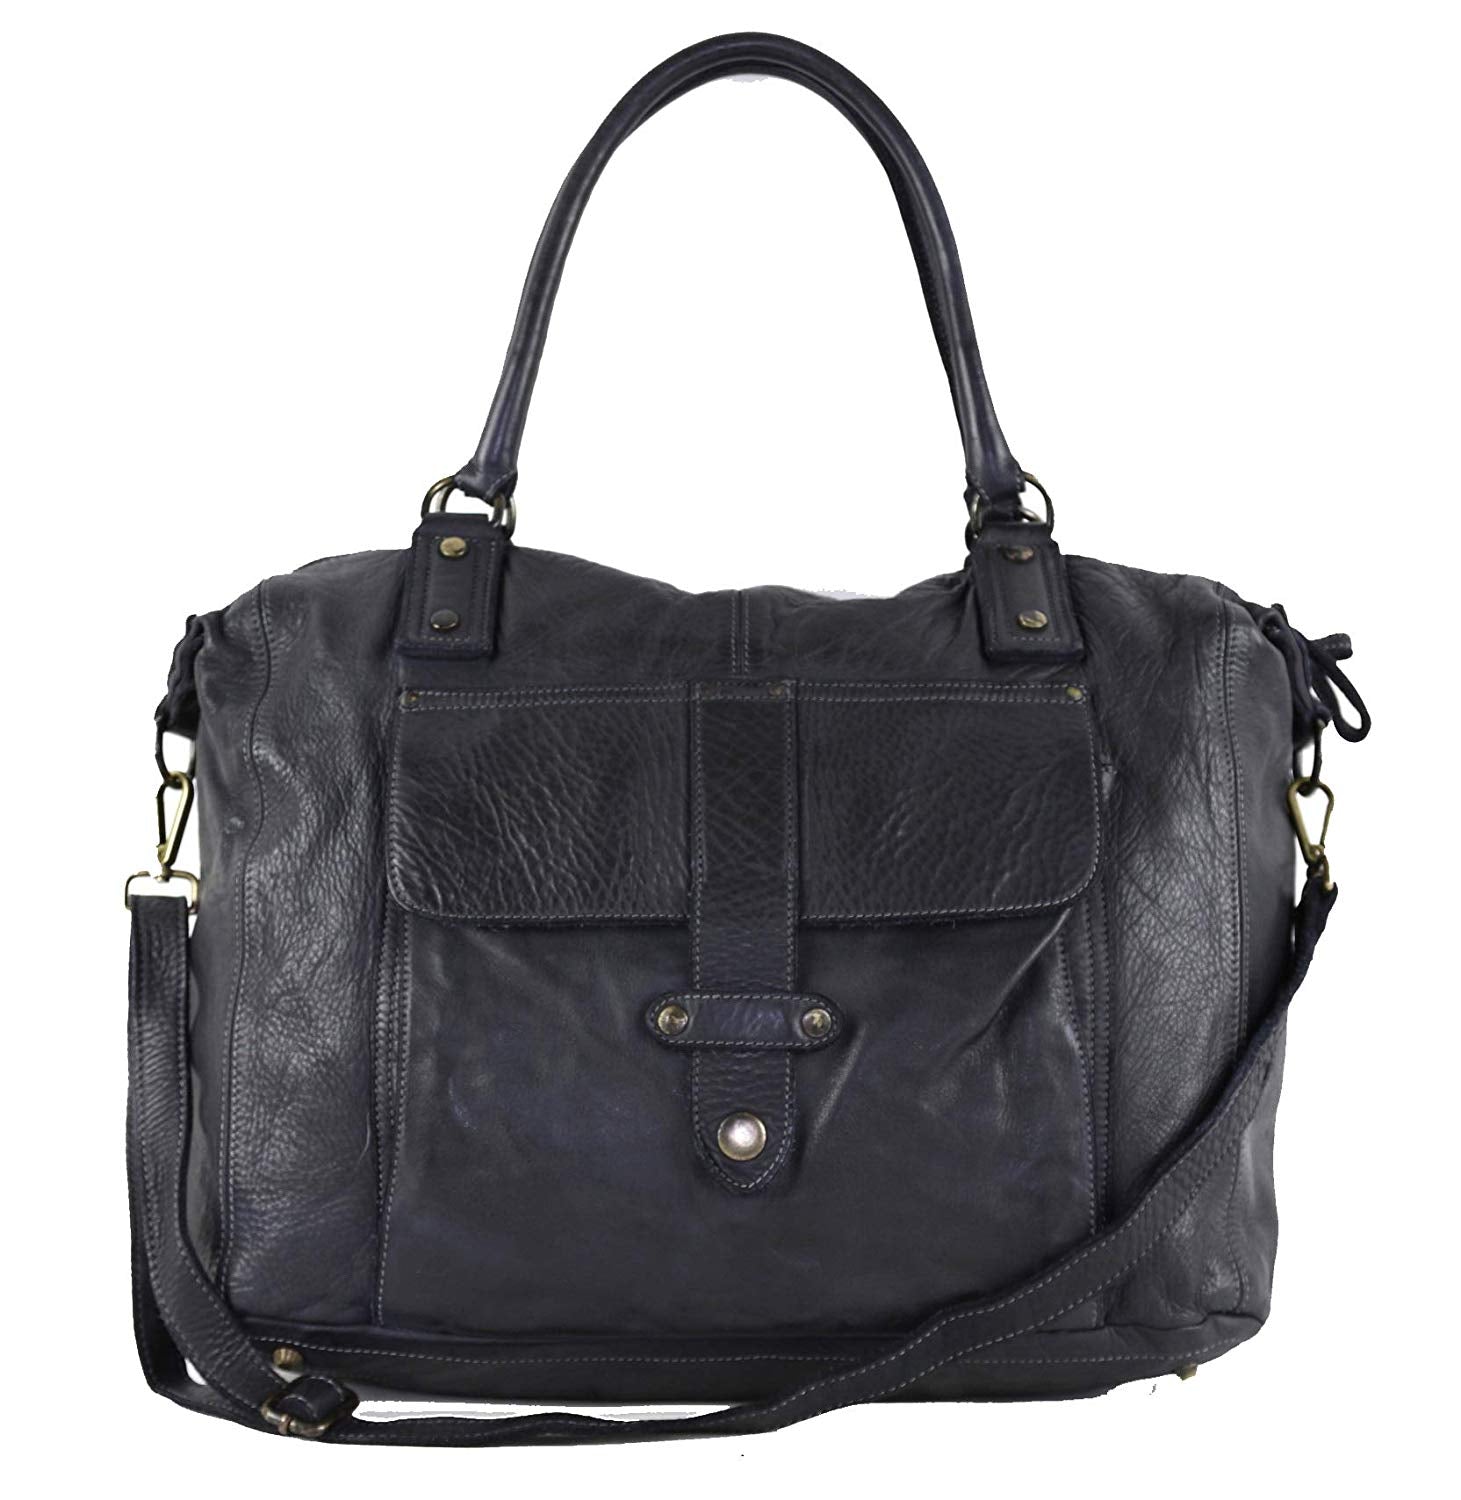 BZNA Bag Viola schwarz Italy Designer Damen Handtasche Ledertasche Schultertasche Tasche Leder Shopper Neu